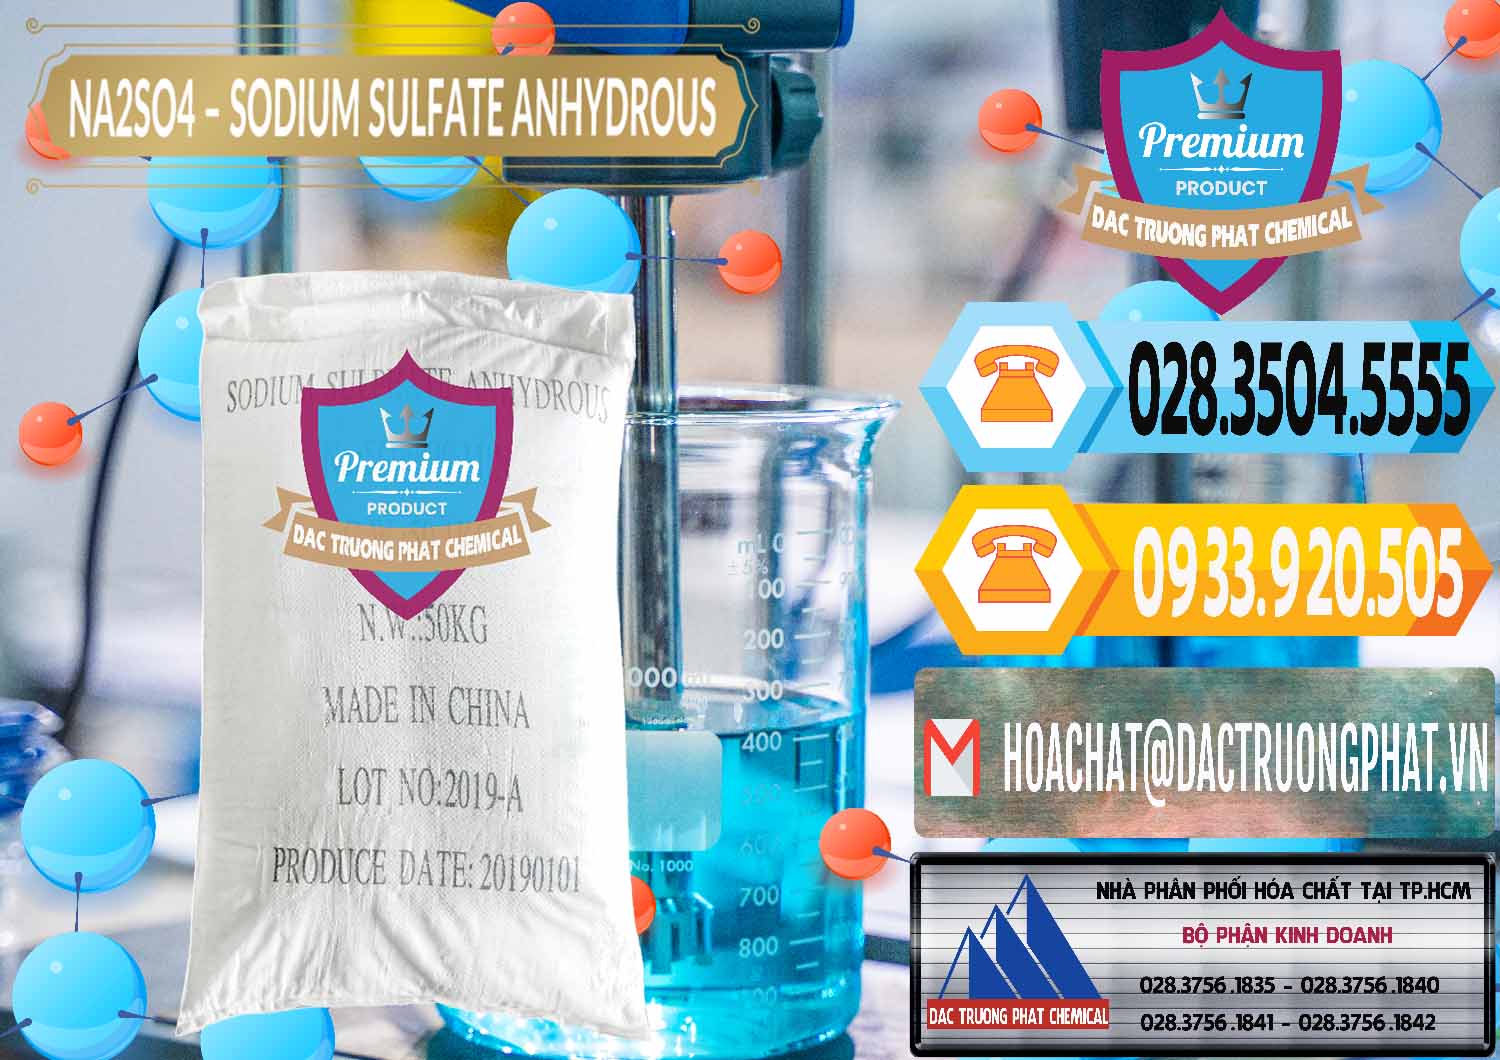 Nơi cung cấp & bán Sodium Sulphate - Muối Sunfat Na2SO4 PH 6-8 Trung Quốc China - 0099 - Chuyên phân phối - bán hóa chất tại TP.HCM - hoachattayrua.net